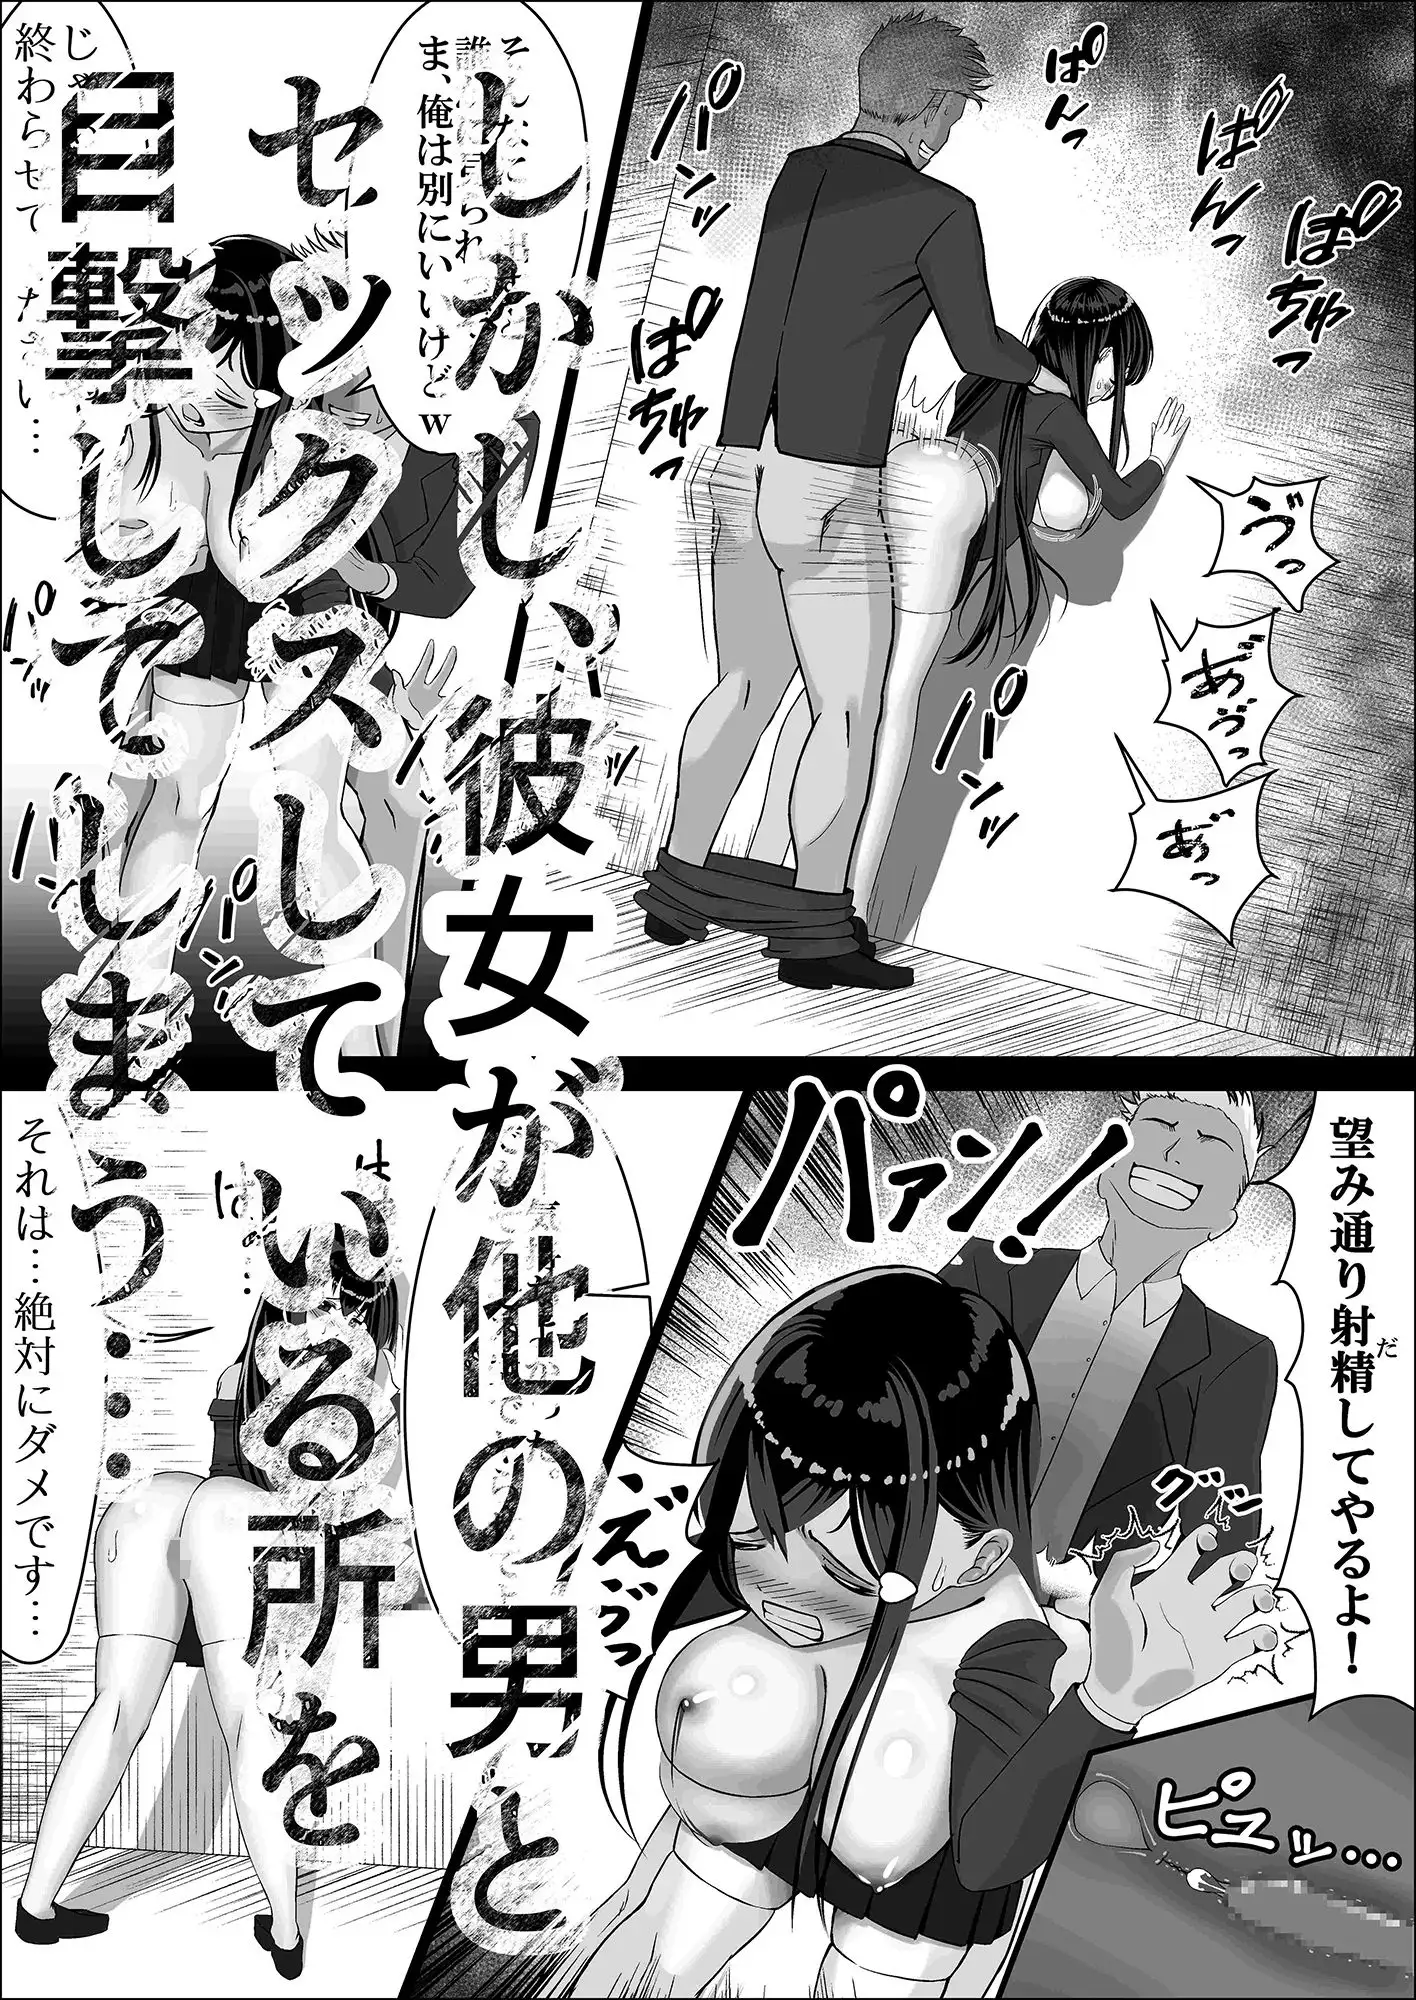 [中田氏]清楚な幼馴染の桜羽美咲さんを彼氏から寝取って生中出しする話